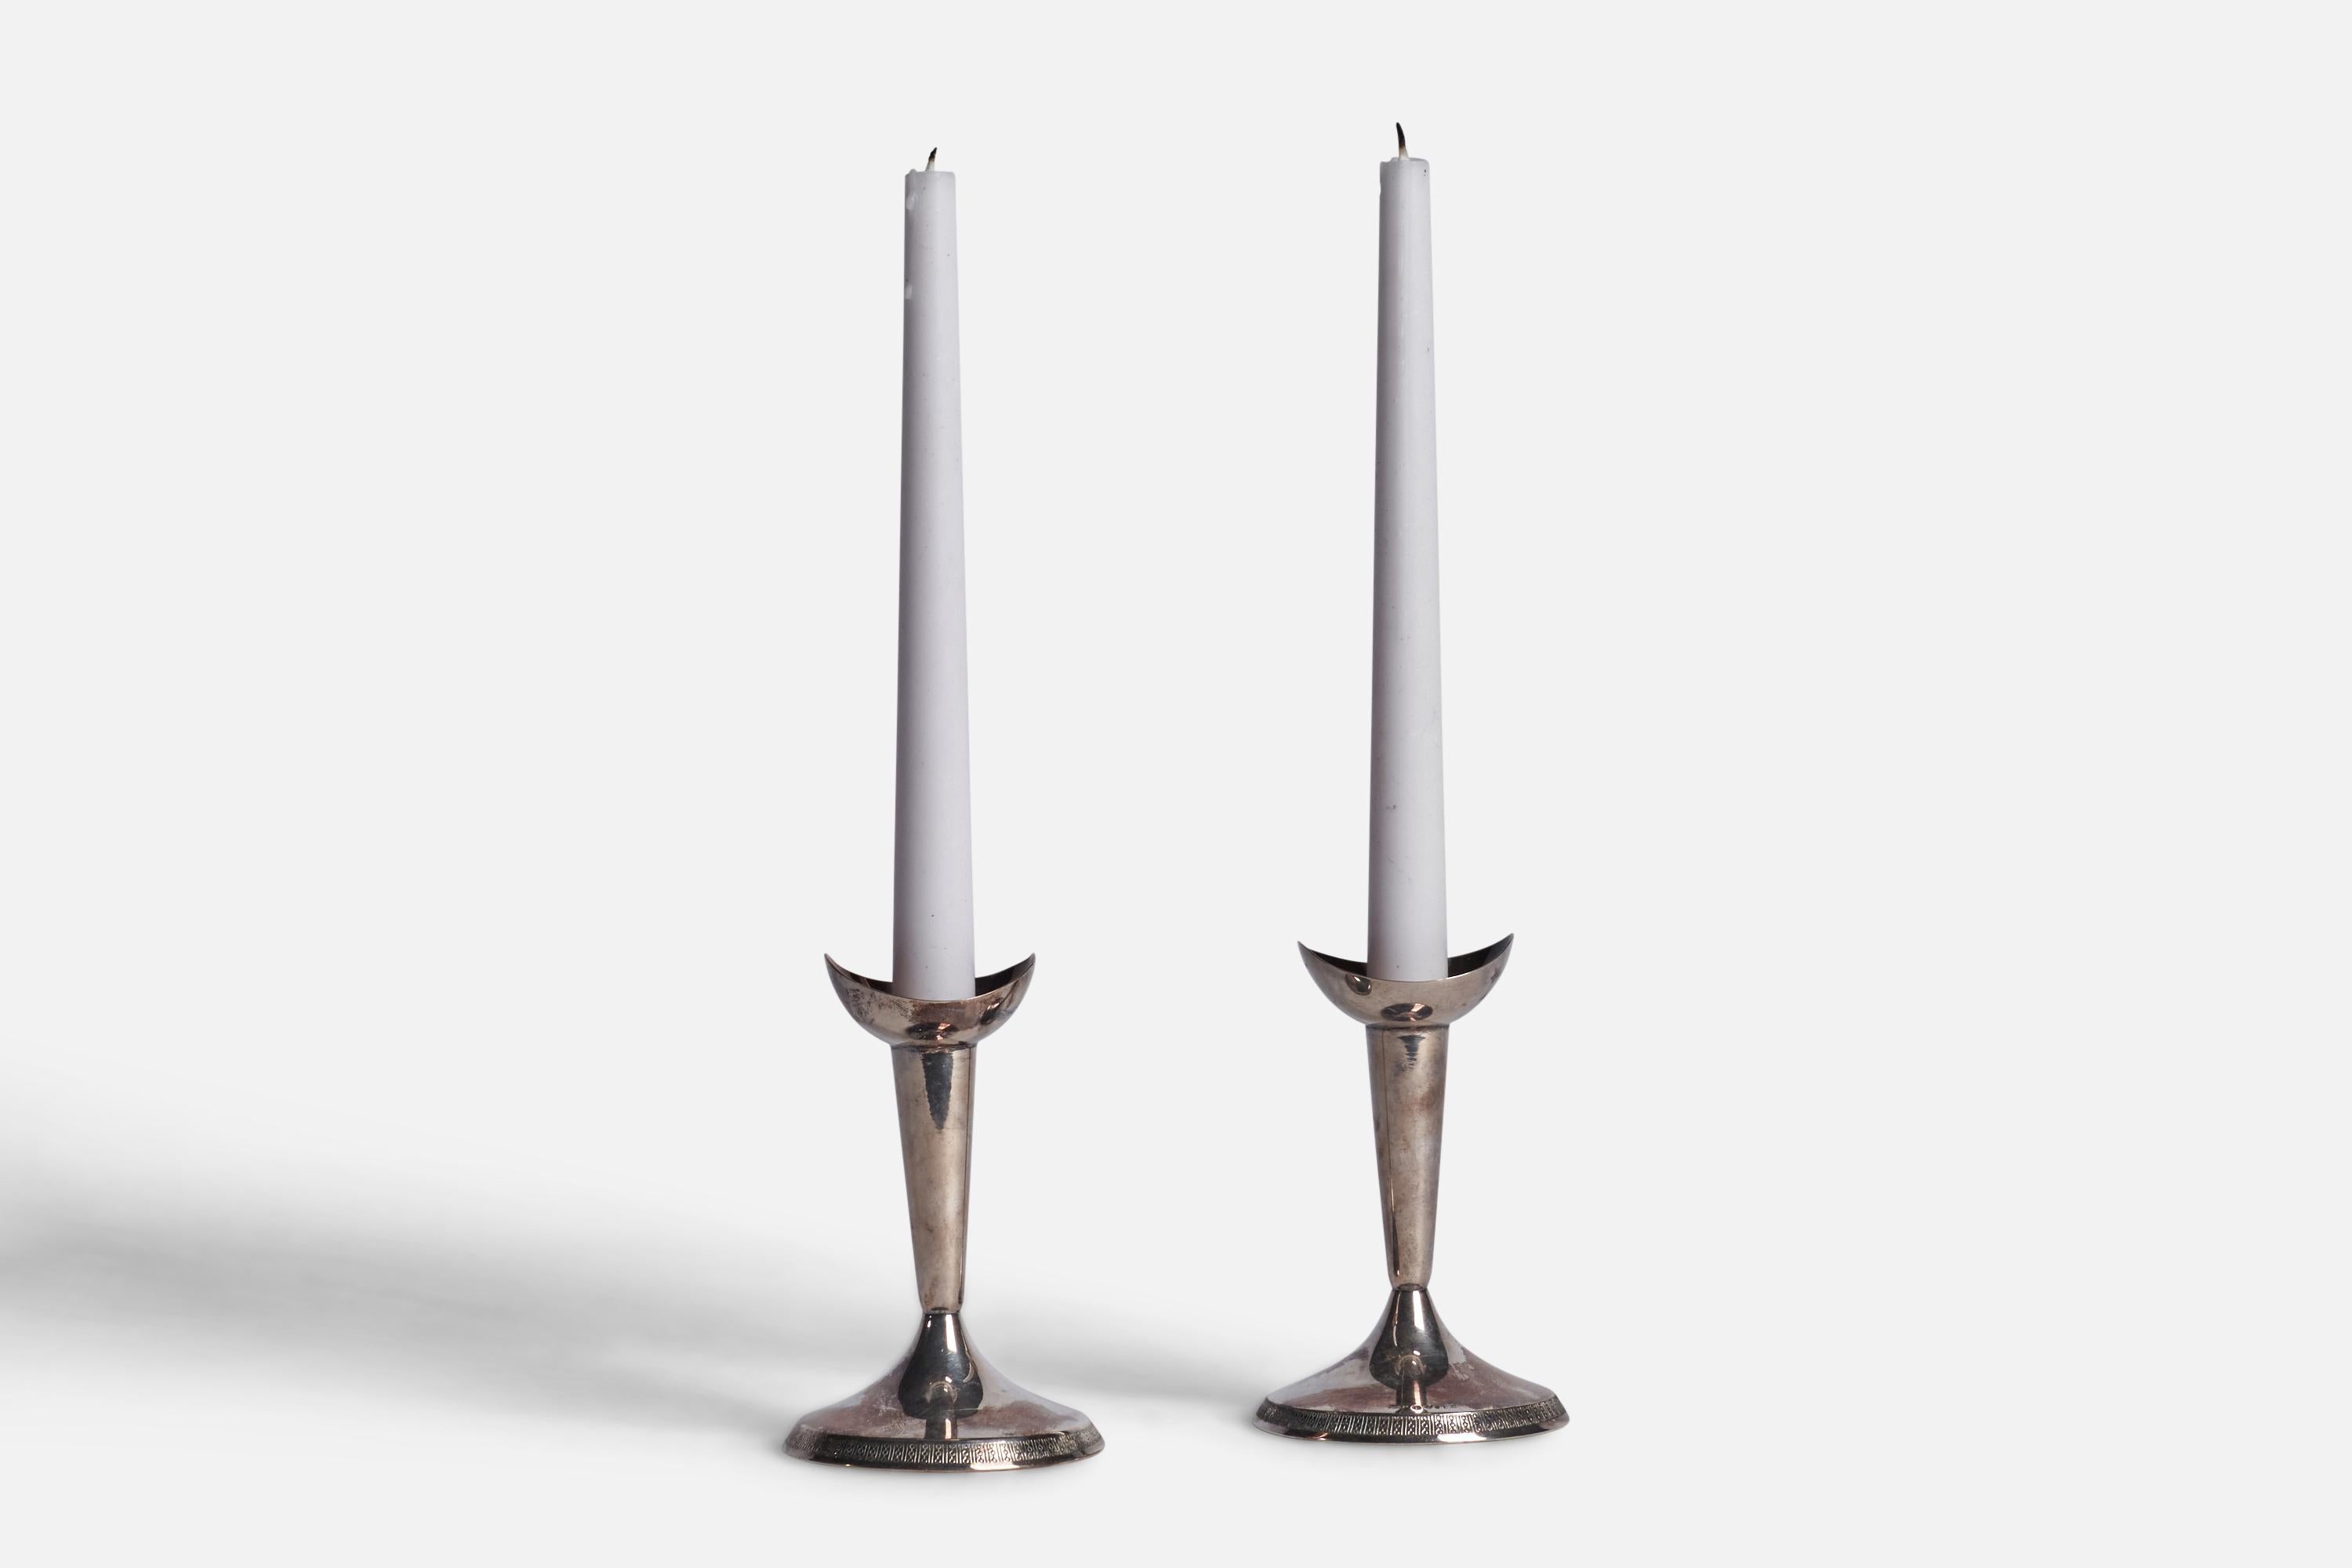 Ein Paar Kerzenhalter aus Sterlingsilber, entworfen und hergestellt von GAB Guldsmedsaktiebolaget, Schweden, 1930er Jahre.

für Kerzen mit 0,80